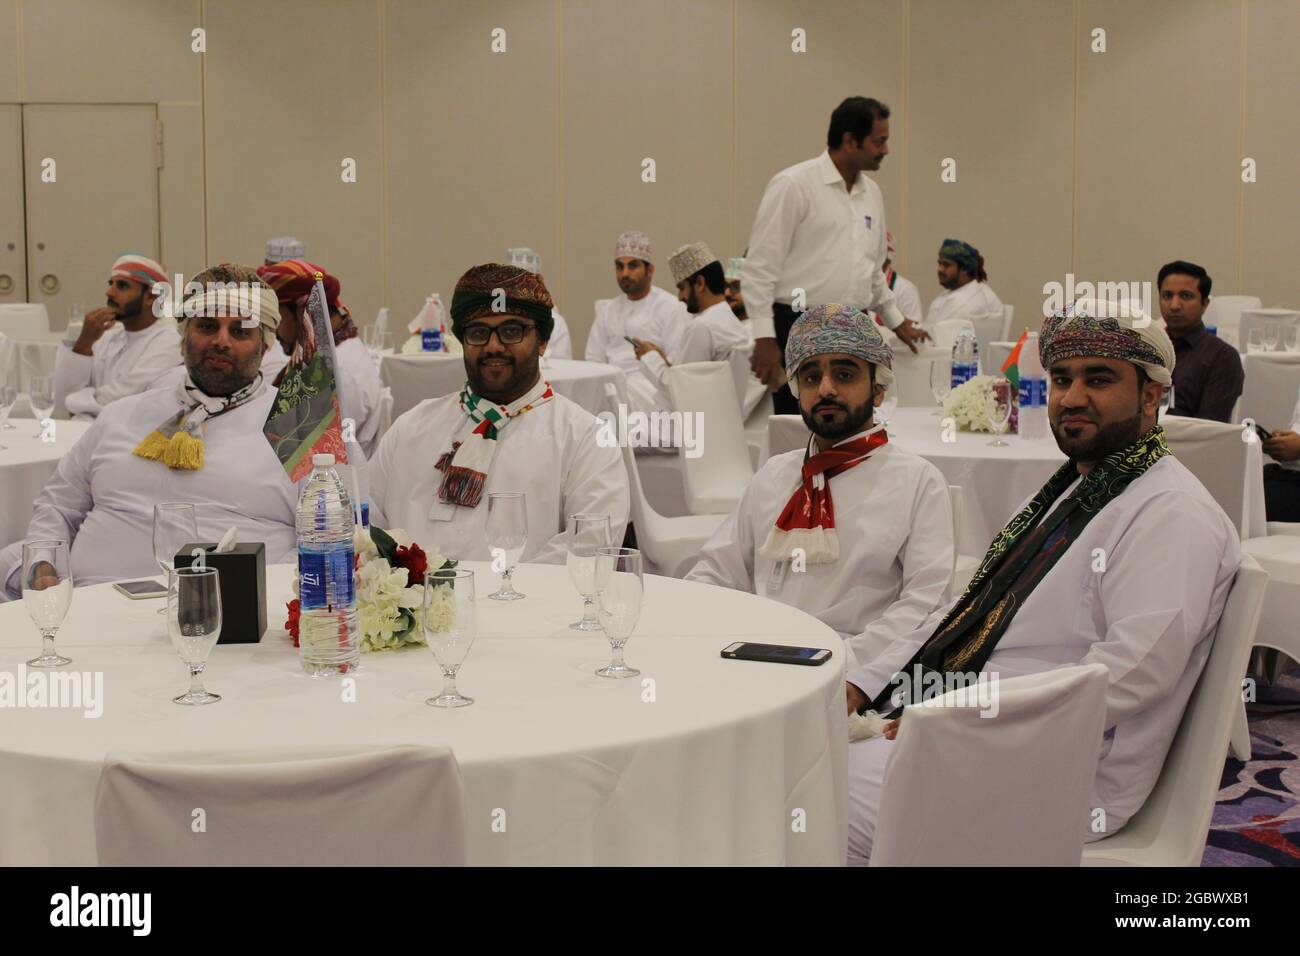 Les citoyens omanais ou les employés sont assis à la table circulaire et célèbrent la journée nationale de l'oman à l'hôtel fraser suites muscat Banque D'Images